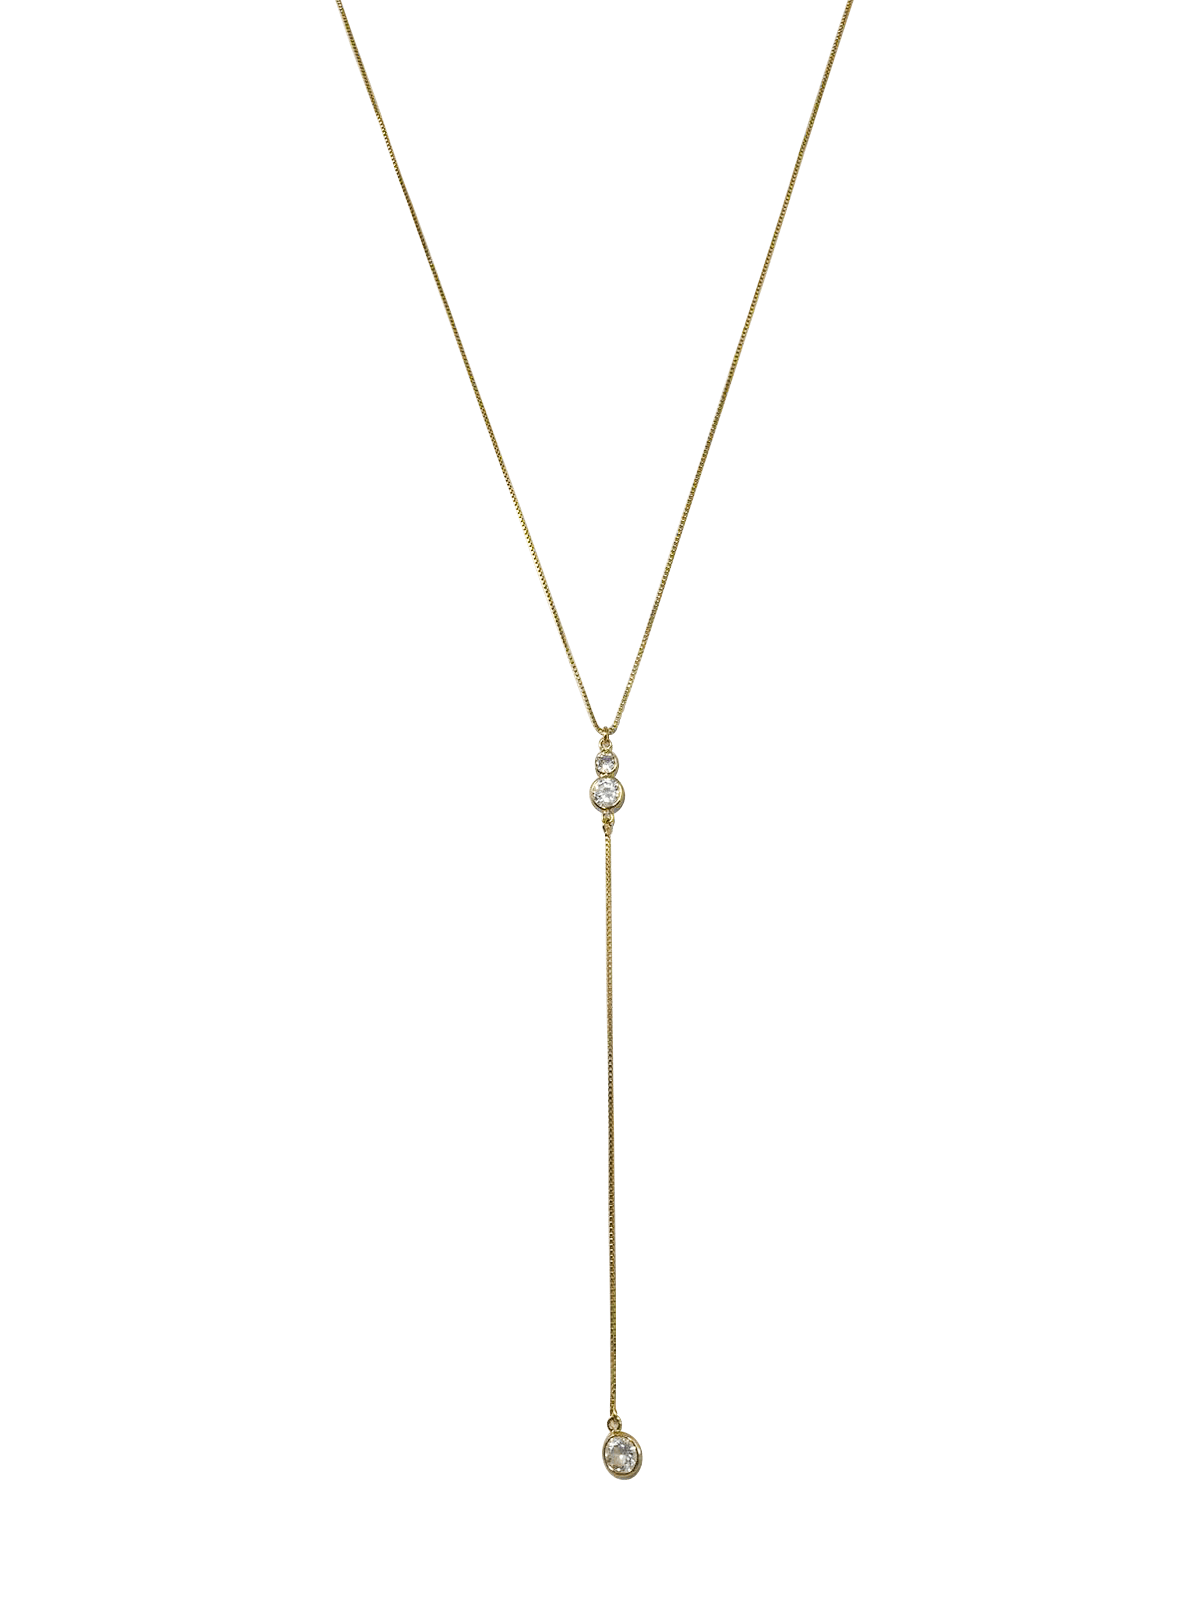 Lariat Necklace - NOA - Necklace